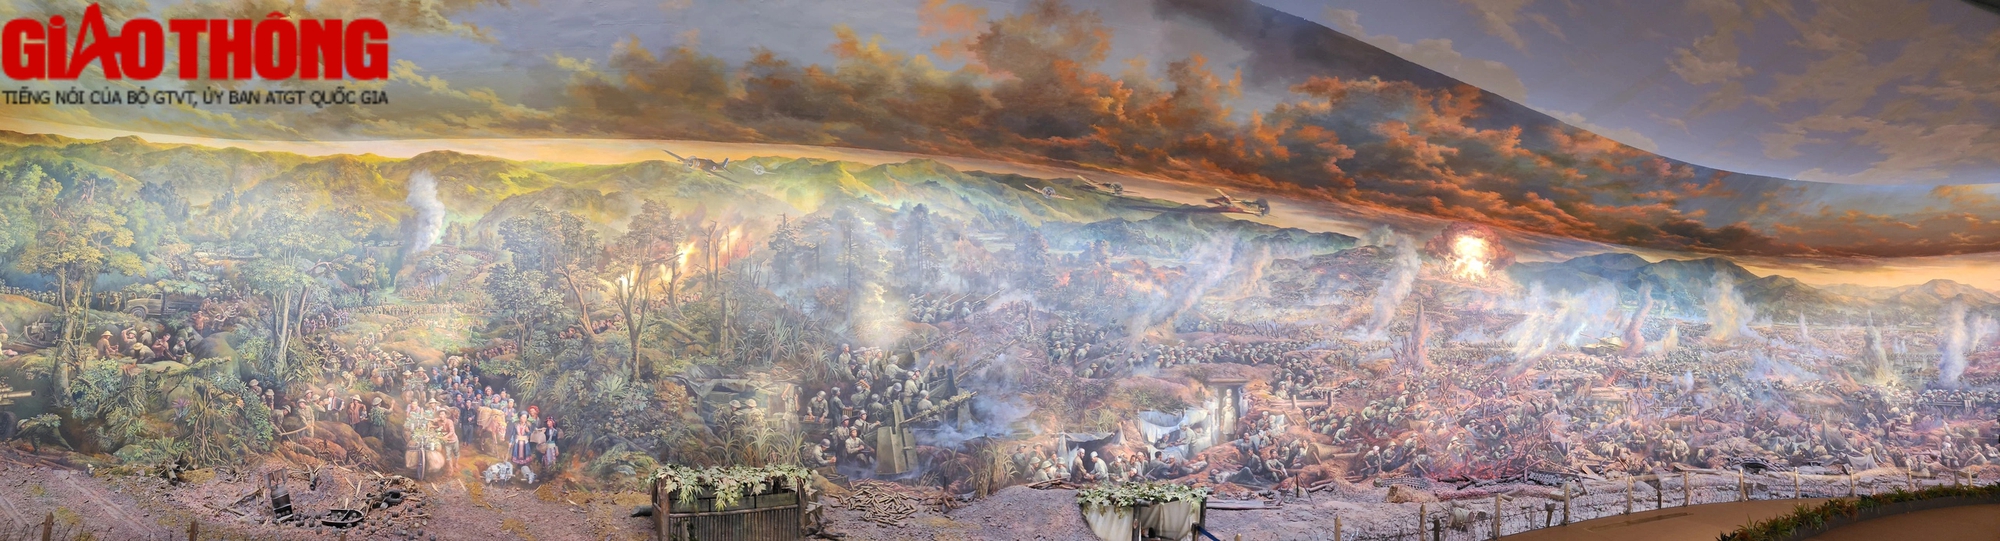 Độc đáo bức tranh panorama Trận chiến Điện Biên Phủ được vẽ bởi gần 100 họa sĩ- Ảnh 3.